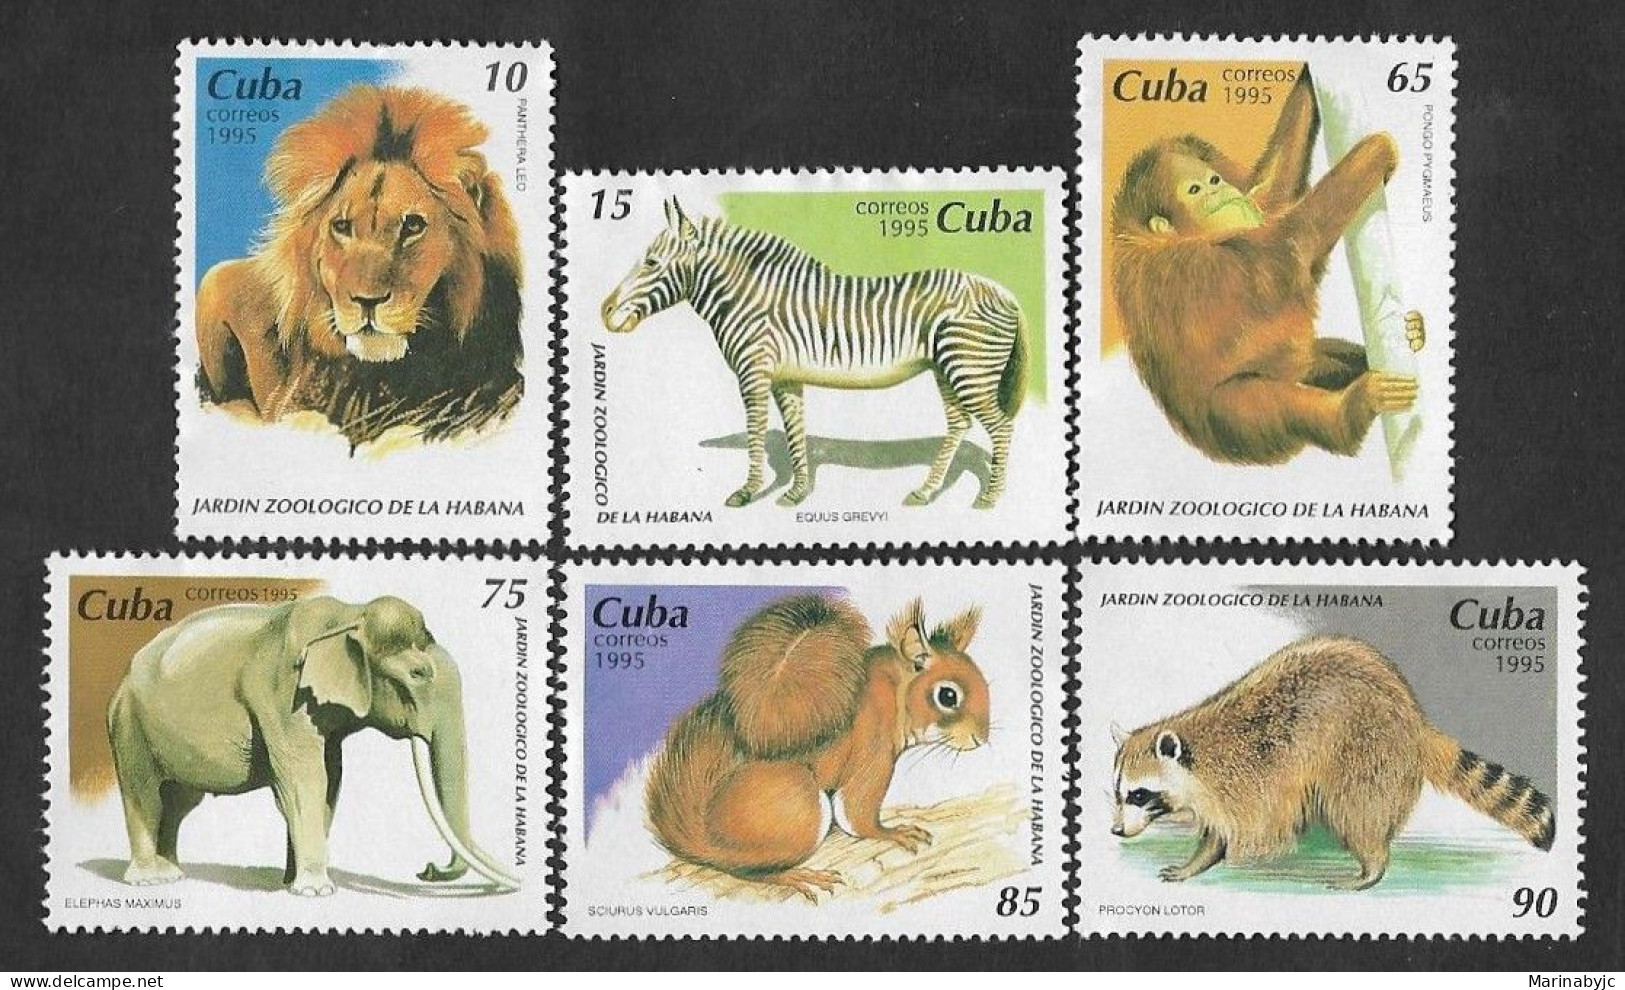 SE)1995 CUBA, ANIMALS OF THE HAVANA ZOOLOGICAL GARDEN, 6 STAMPS MNH - Ongebruikt